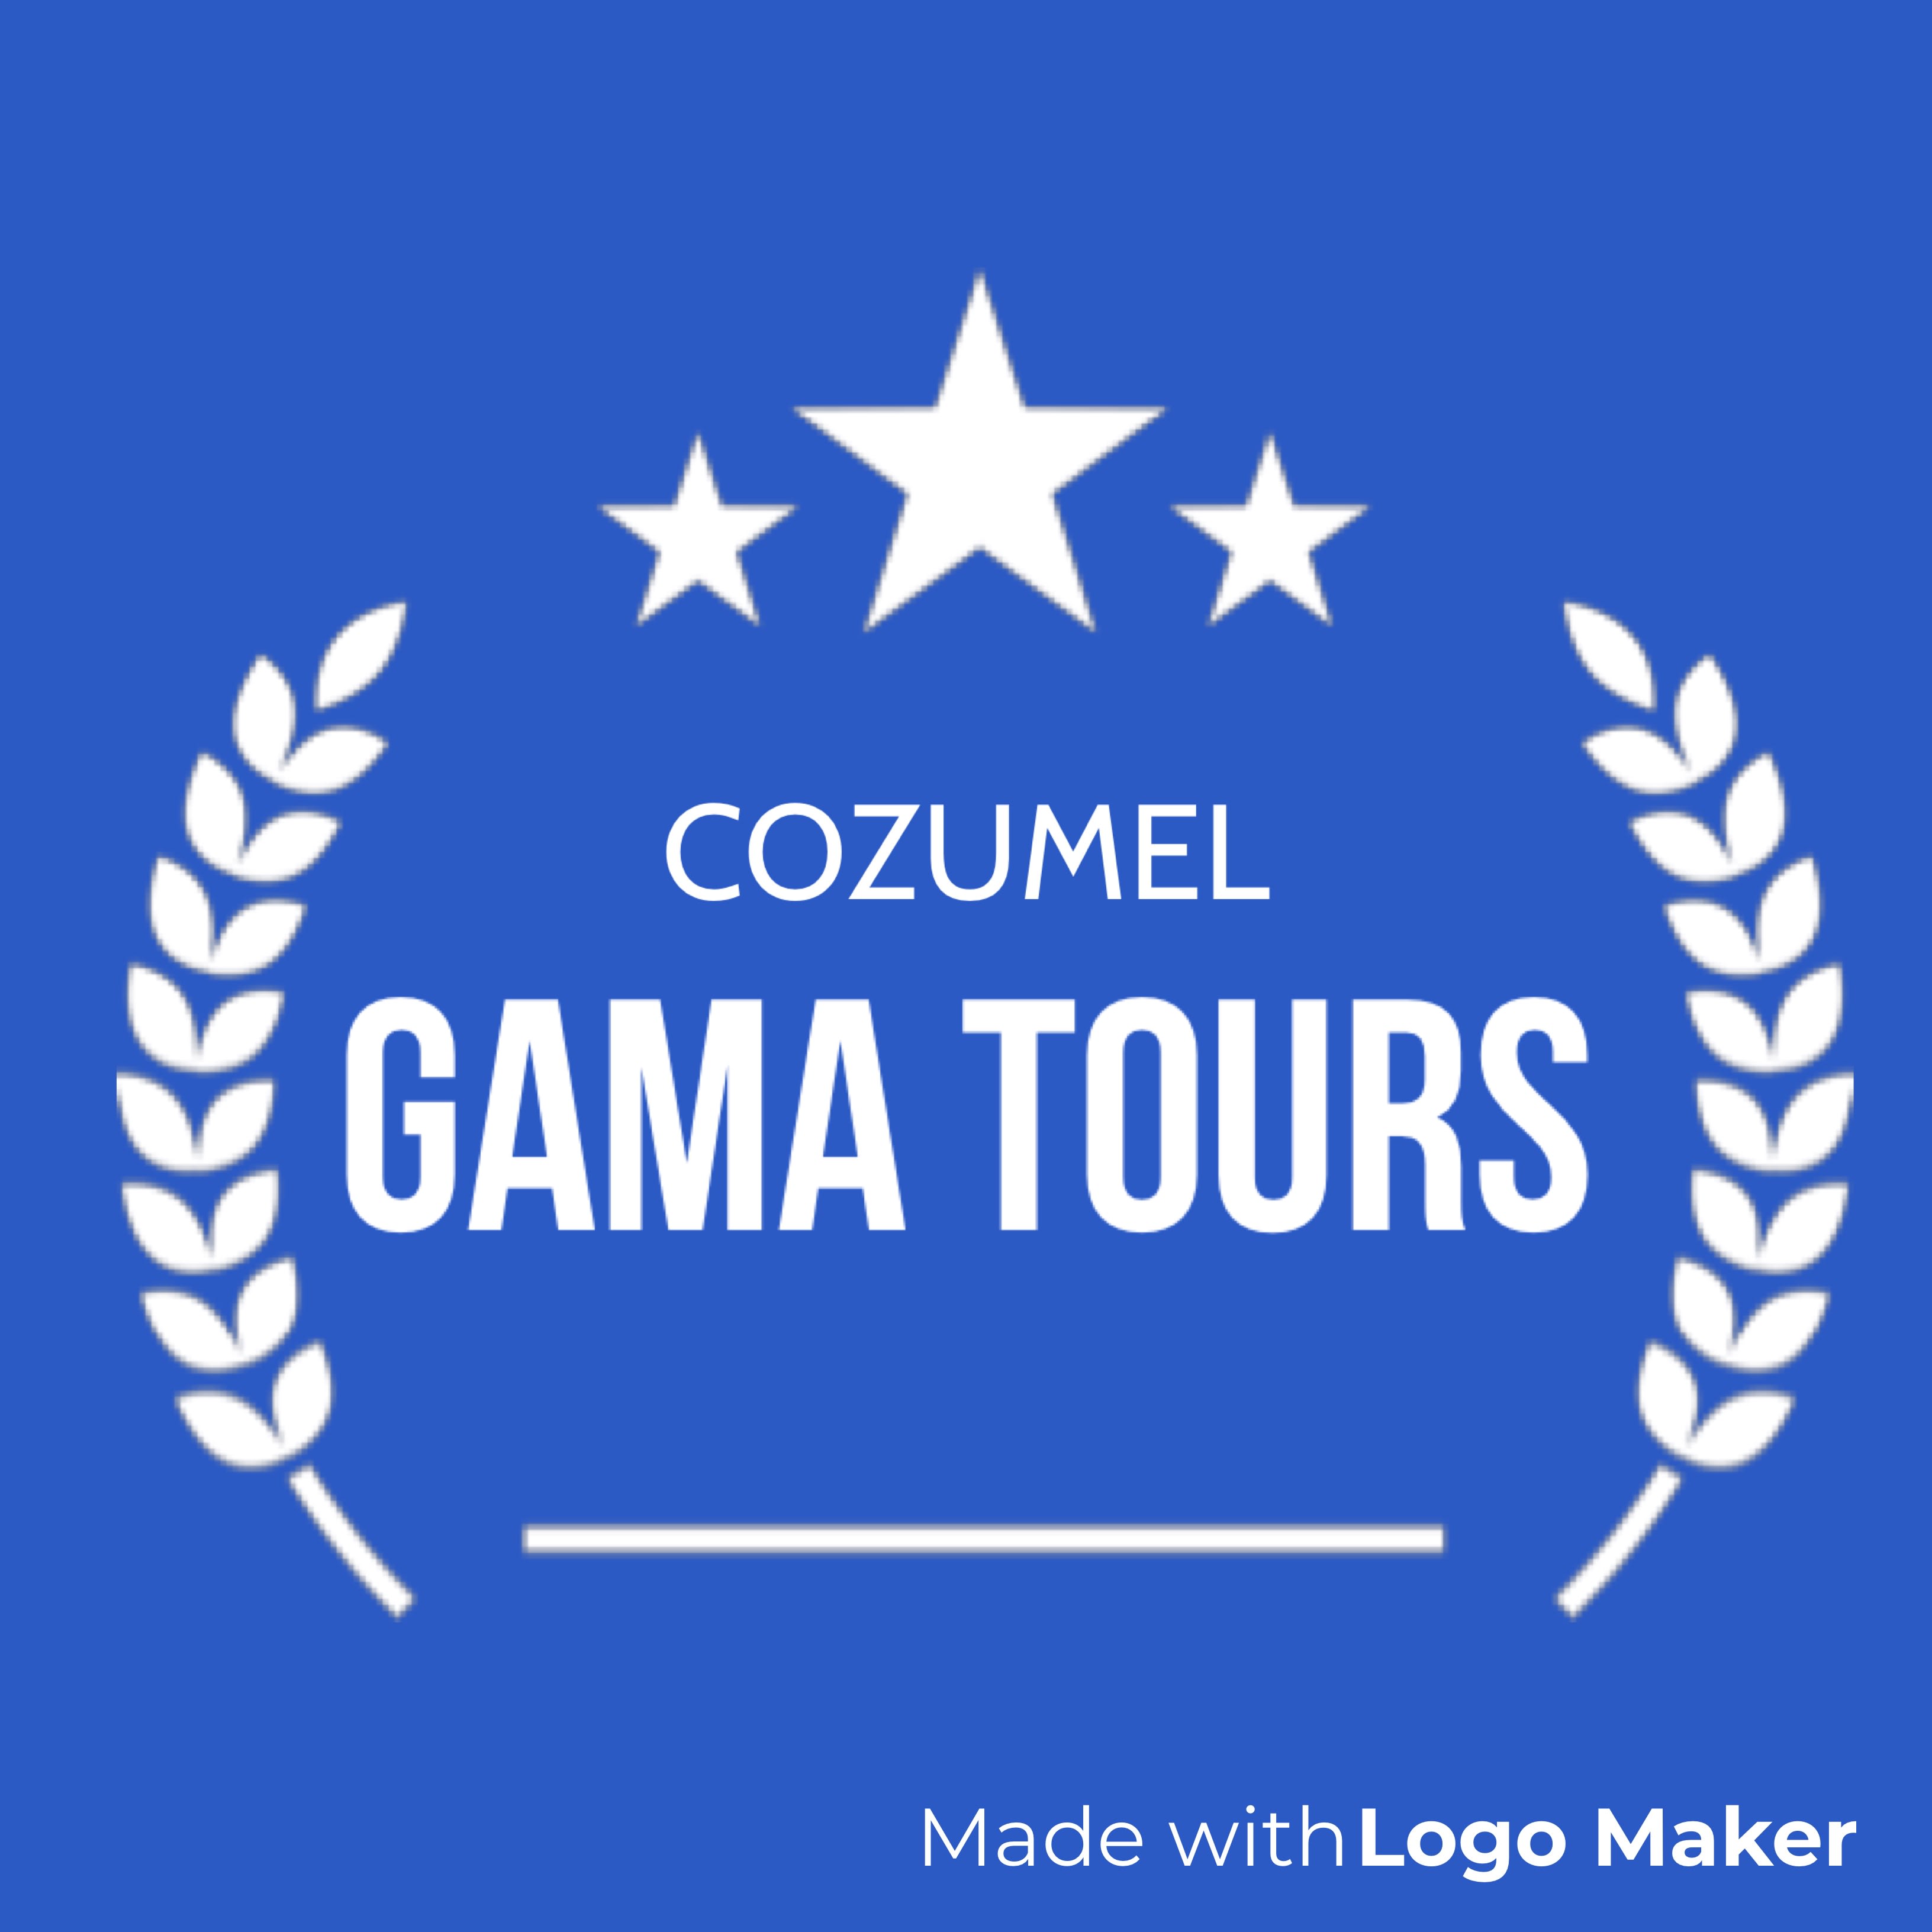 Gama Tours Cozumel